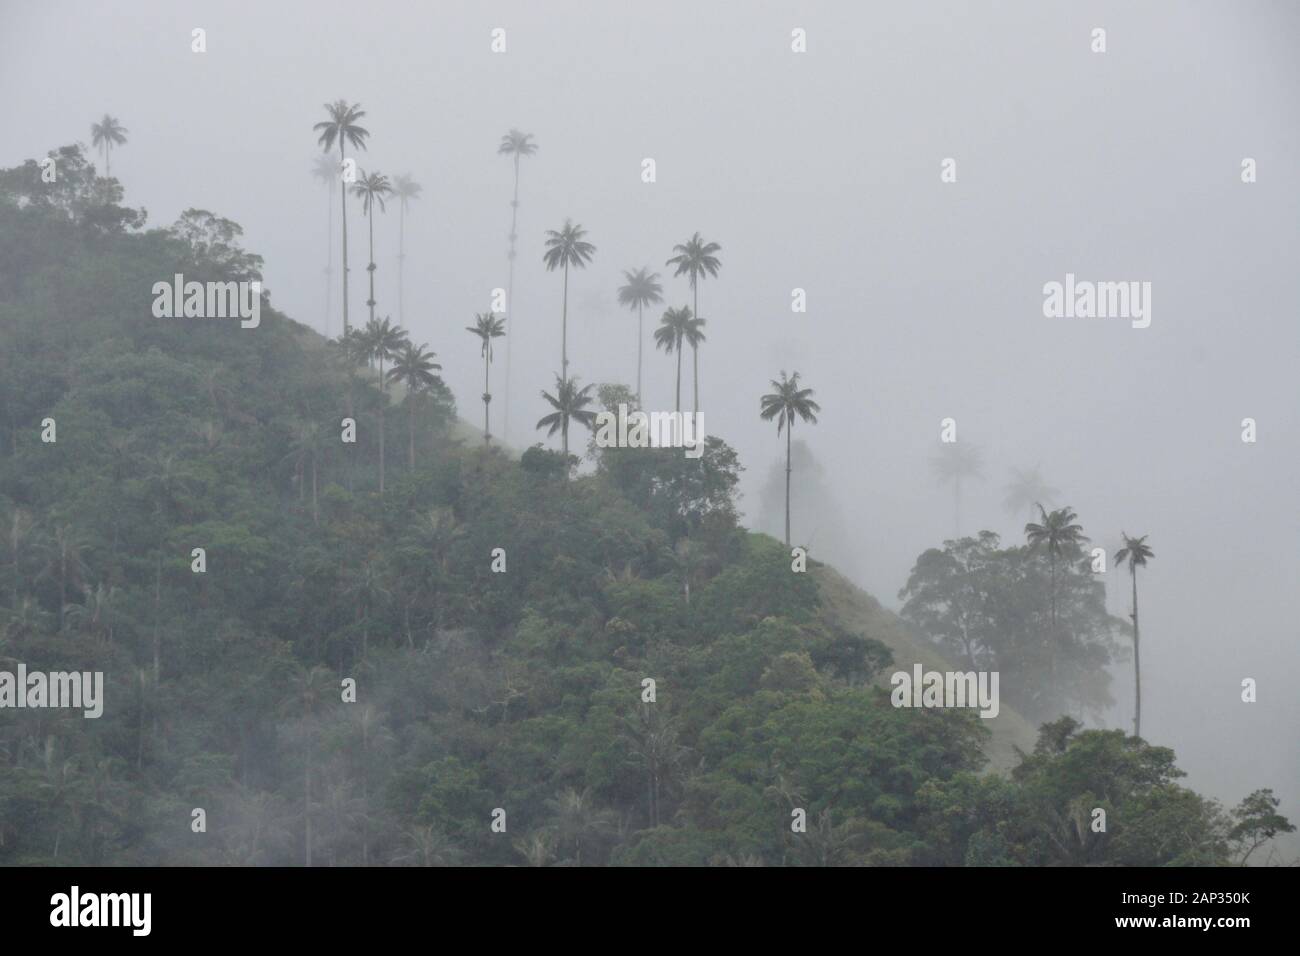 Wax palms (arbre national en Colombie) et végétation tropicale dans la vallée de Cocora près de Salento Quindio, ministère, Colombie, sur un jour pluvieux et brumeux Banque D'Images